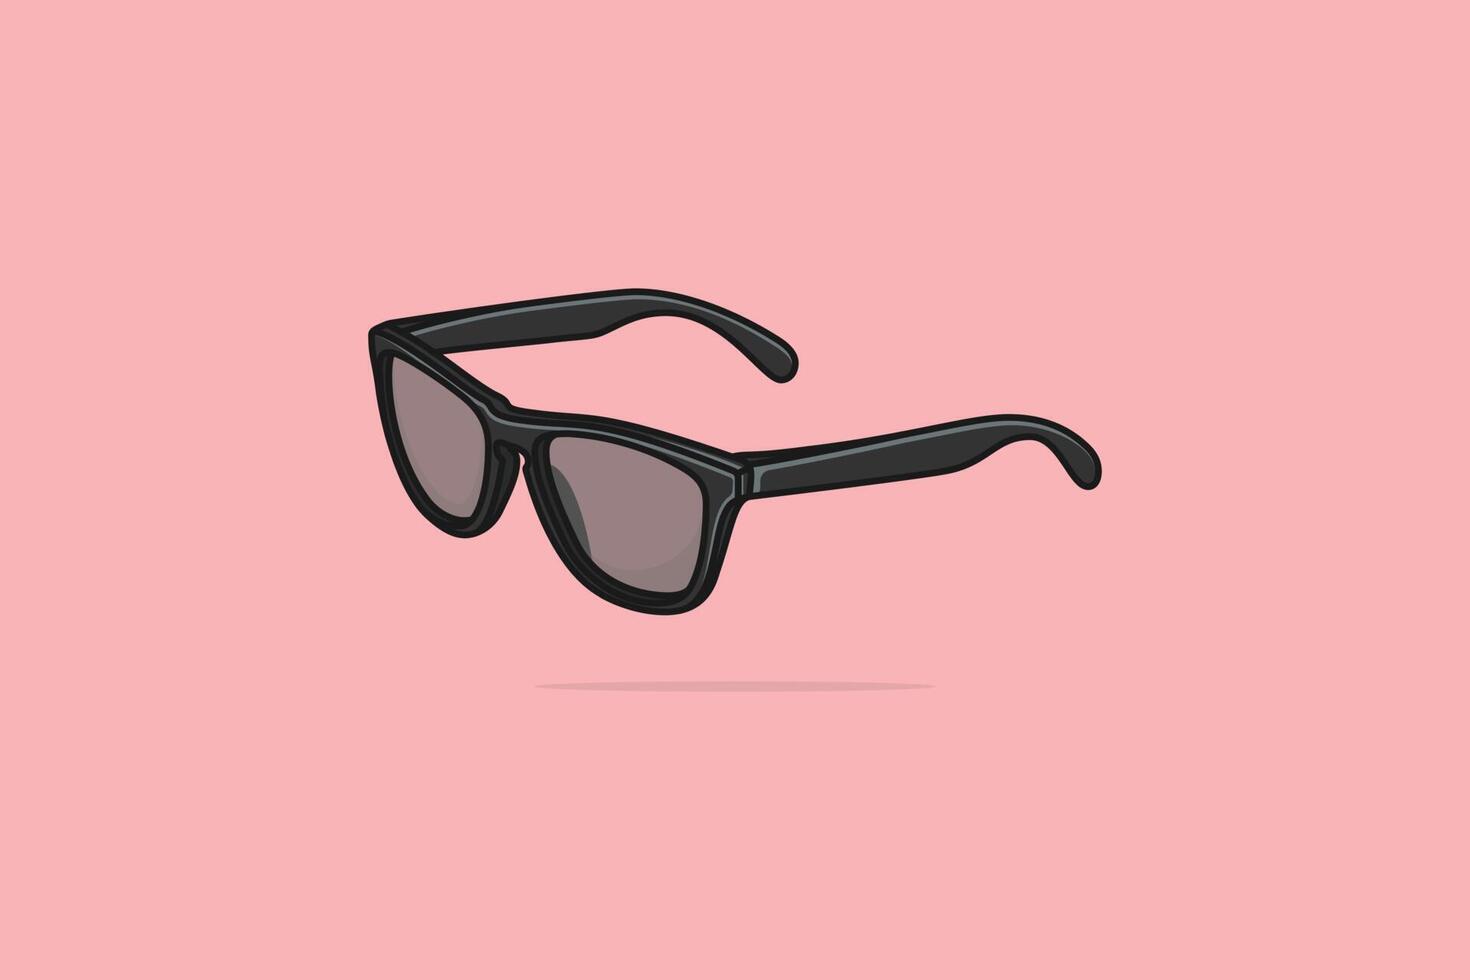 Sommer- glänzend grau Sonne Brille mit stilvoll gestalten Vektor Illustration. Sommer- Brille Objekt Symbol Konzept. Sommer- Mode Brille mit Schatten Vektor Design auf Licht Orange Hintergrund.